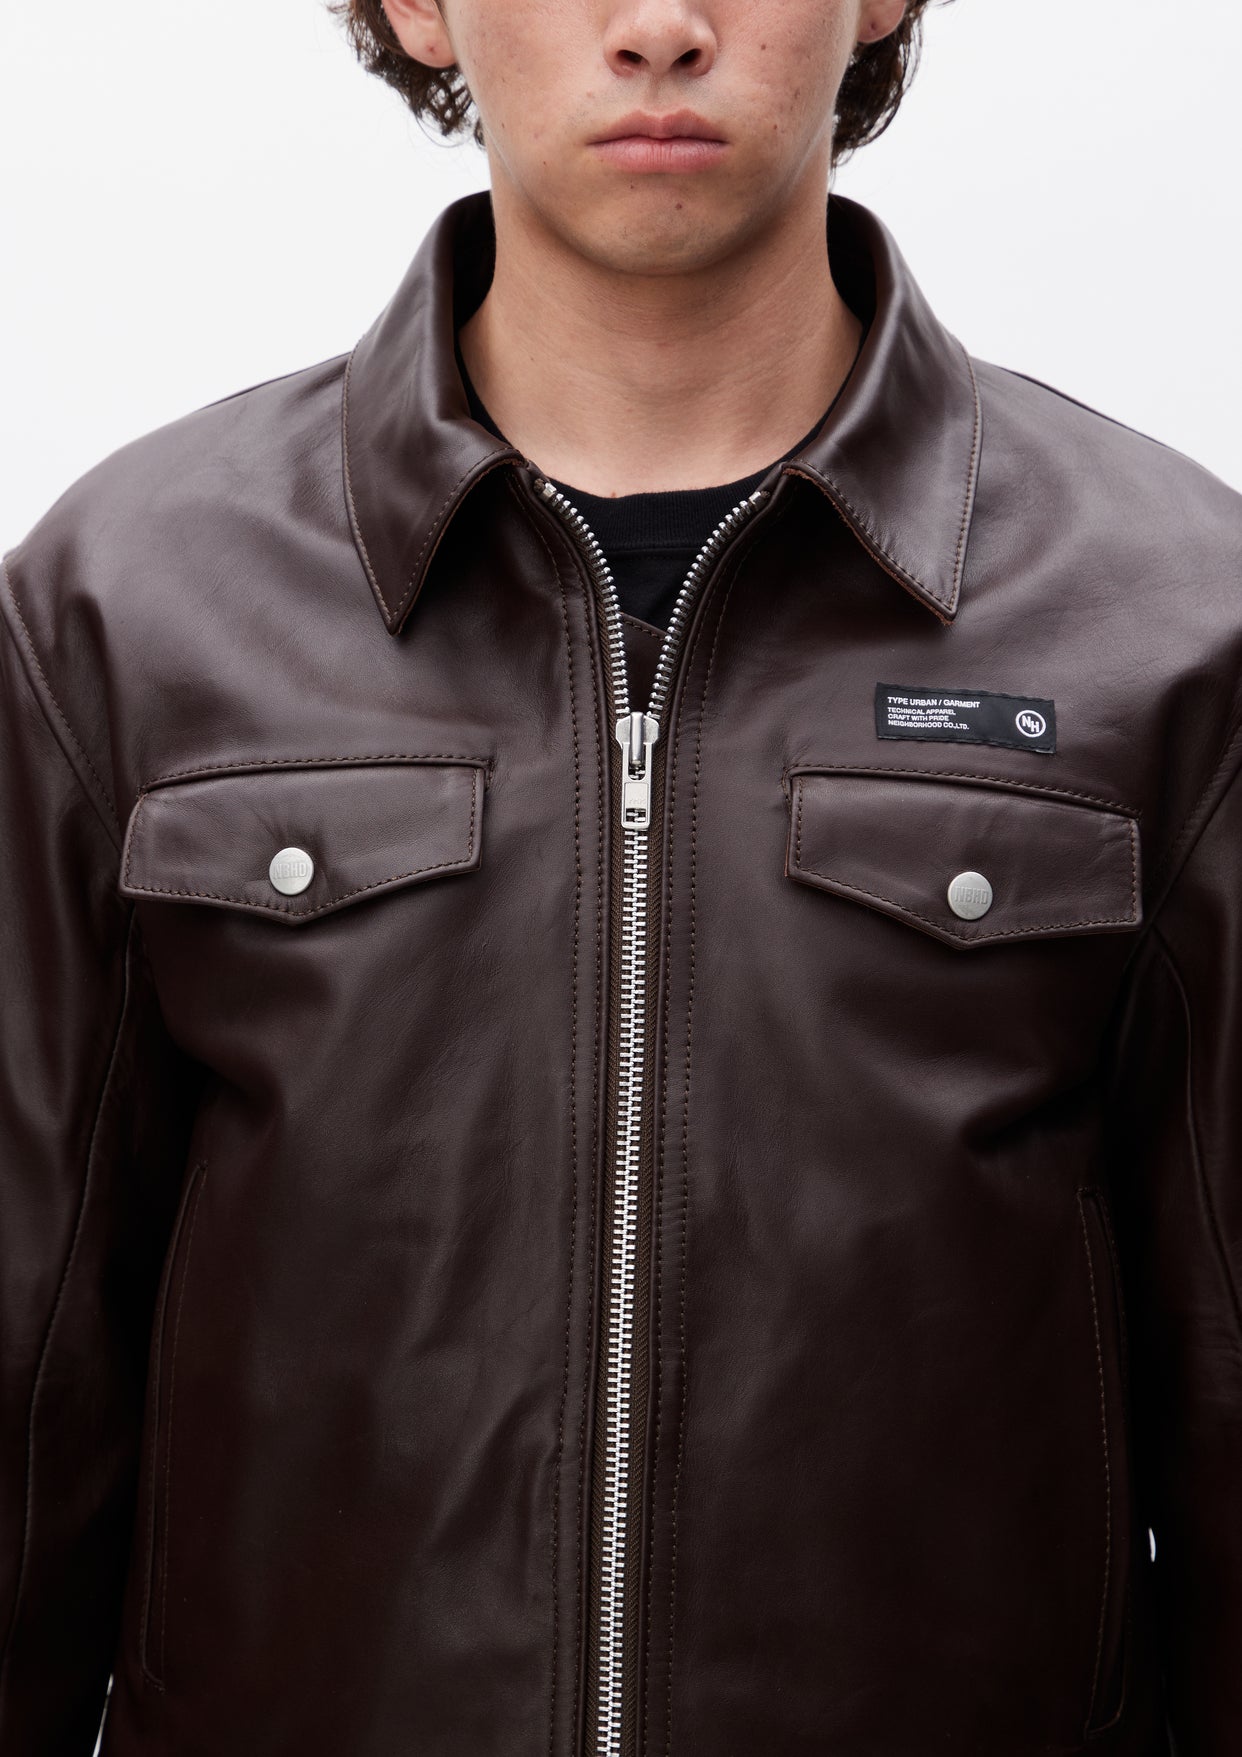 neighborhood leather jacket